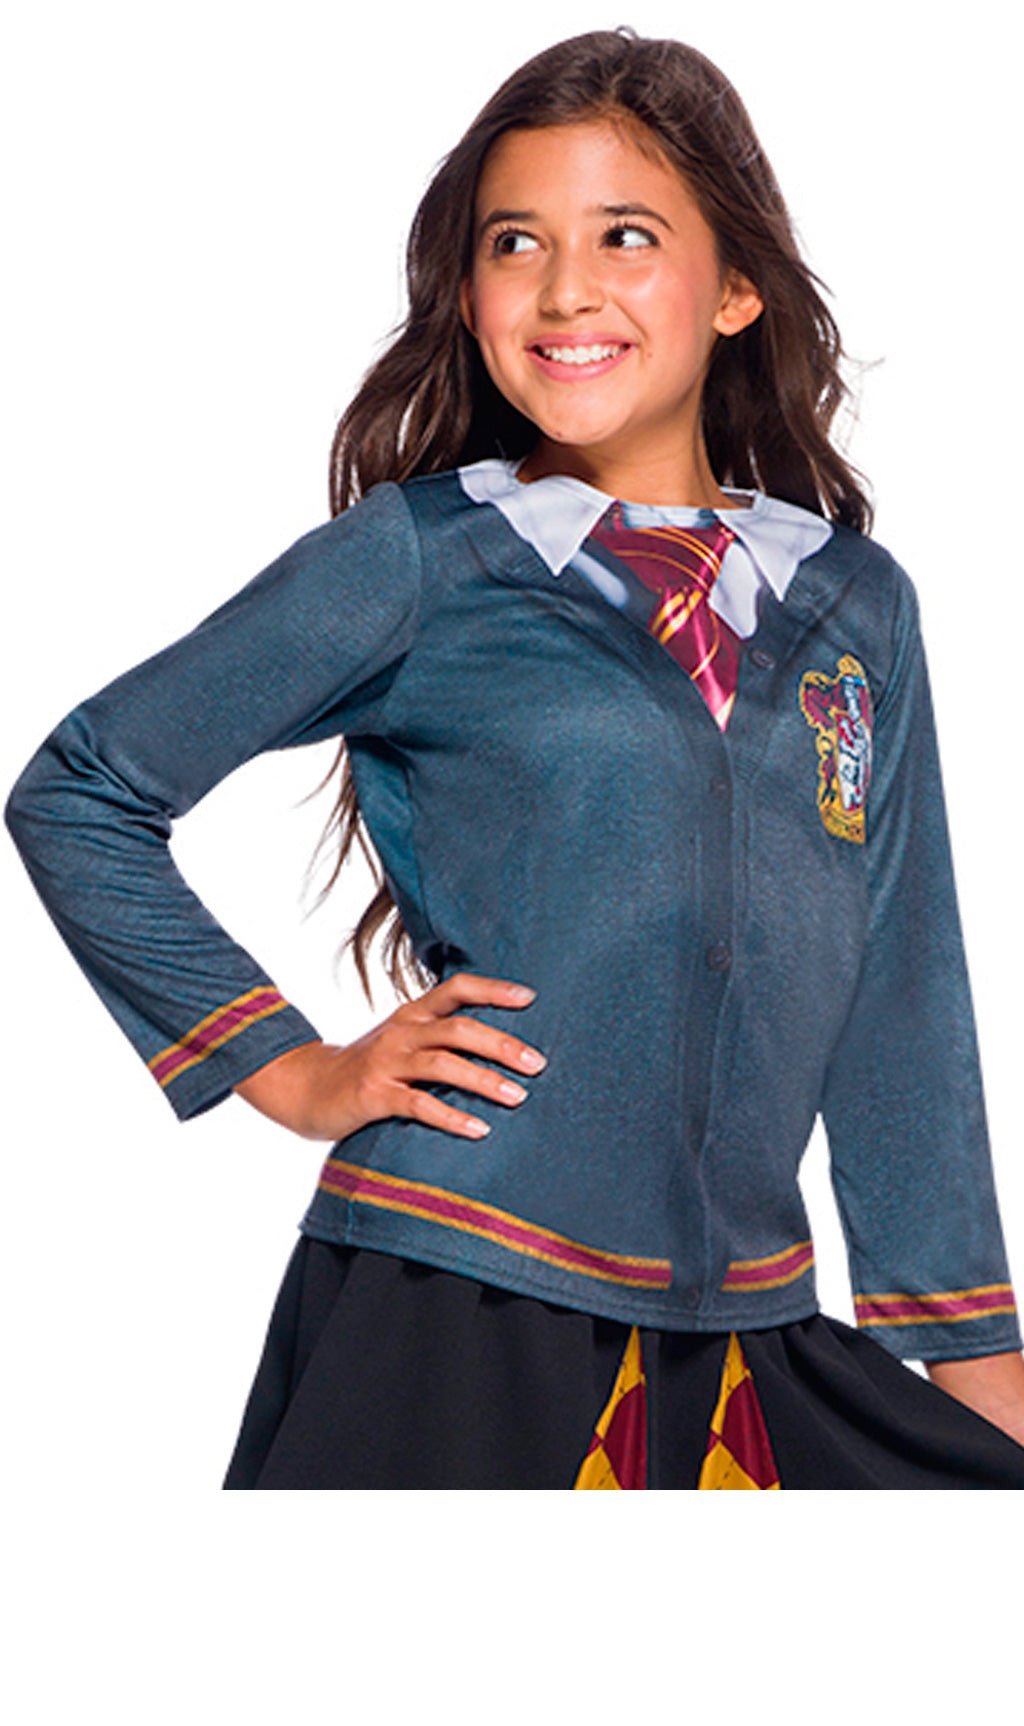 Camiseta de Harry Potter™ Gryffindor infantil I Don Disfraz